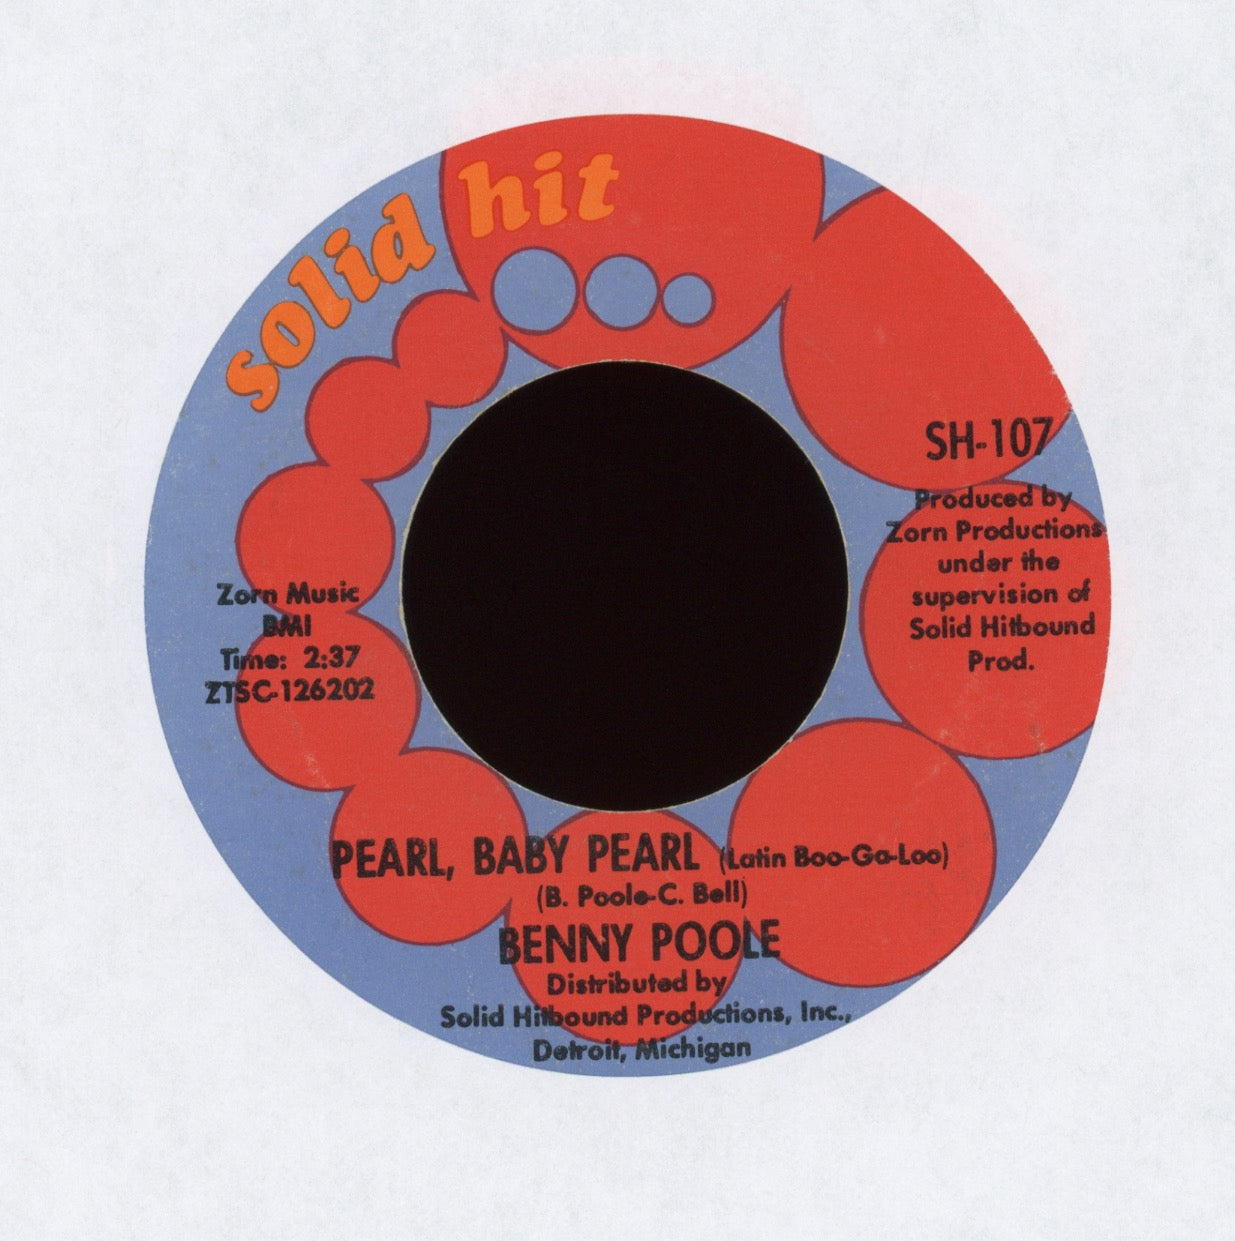 Benny Poole - Pearl, Baby Pearl (Latin Boo-Ga-Loo) on Solid Hit Latin Mod Soul 45